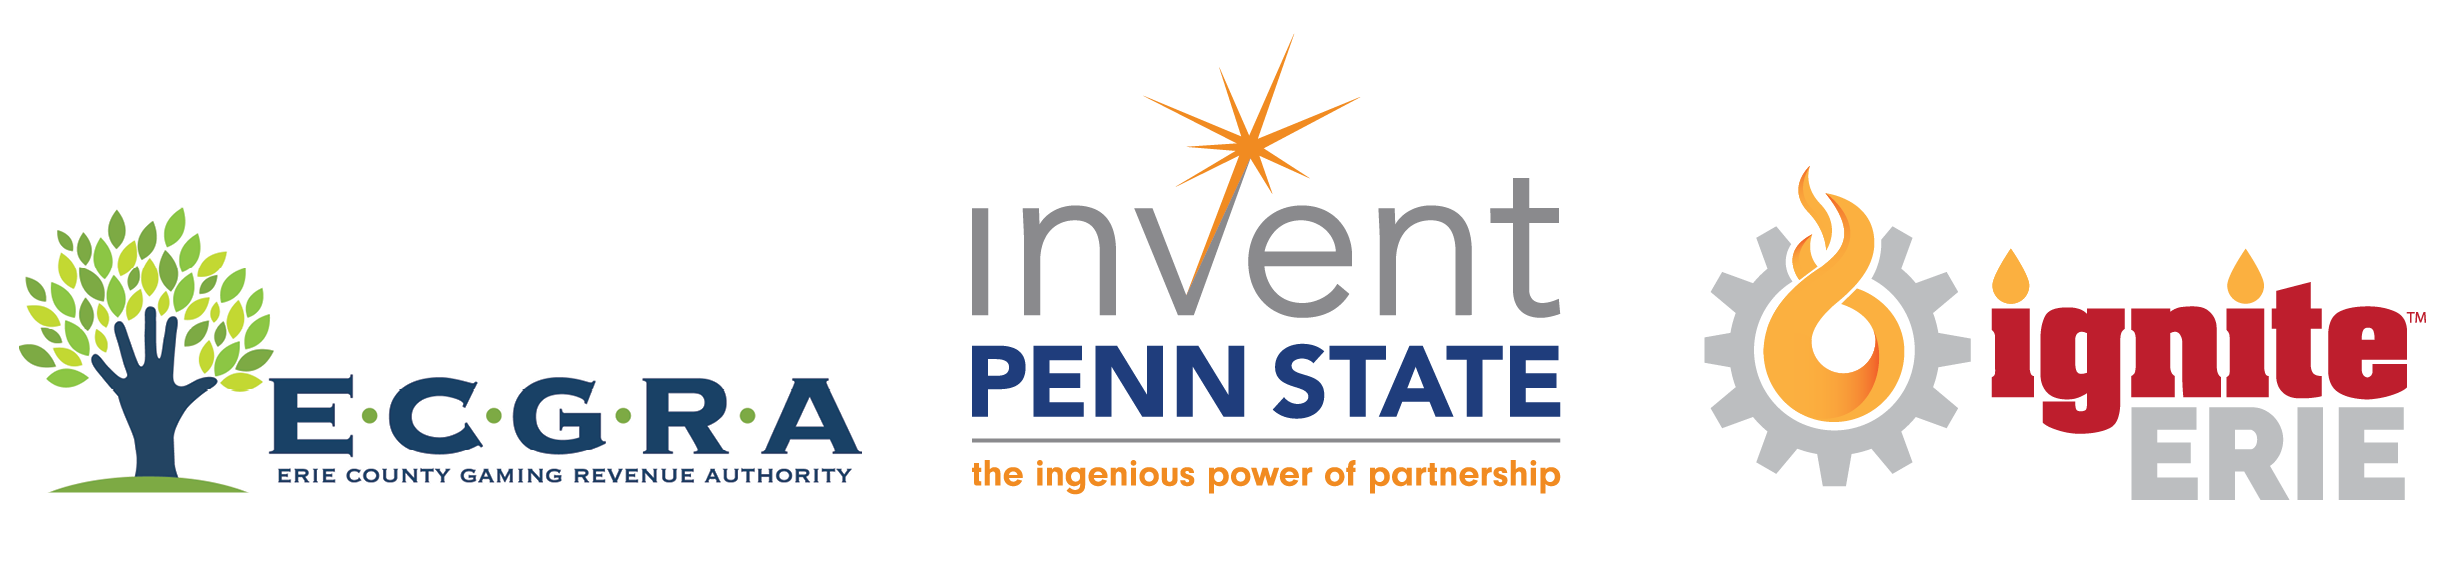 ECGRA, Invest Penn State, Ignite Erie marks